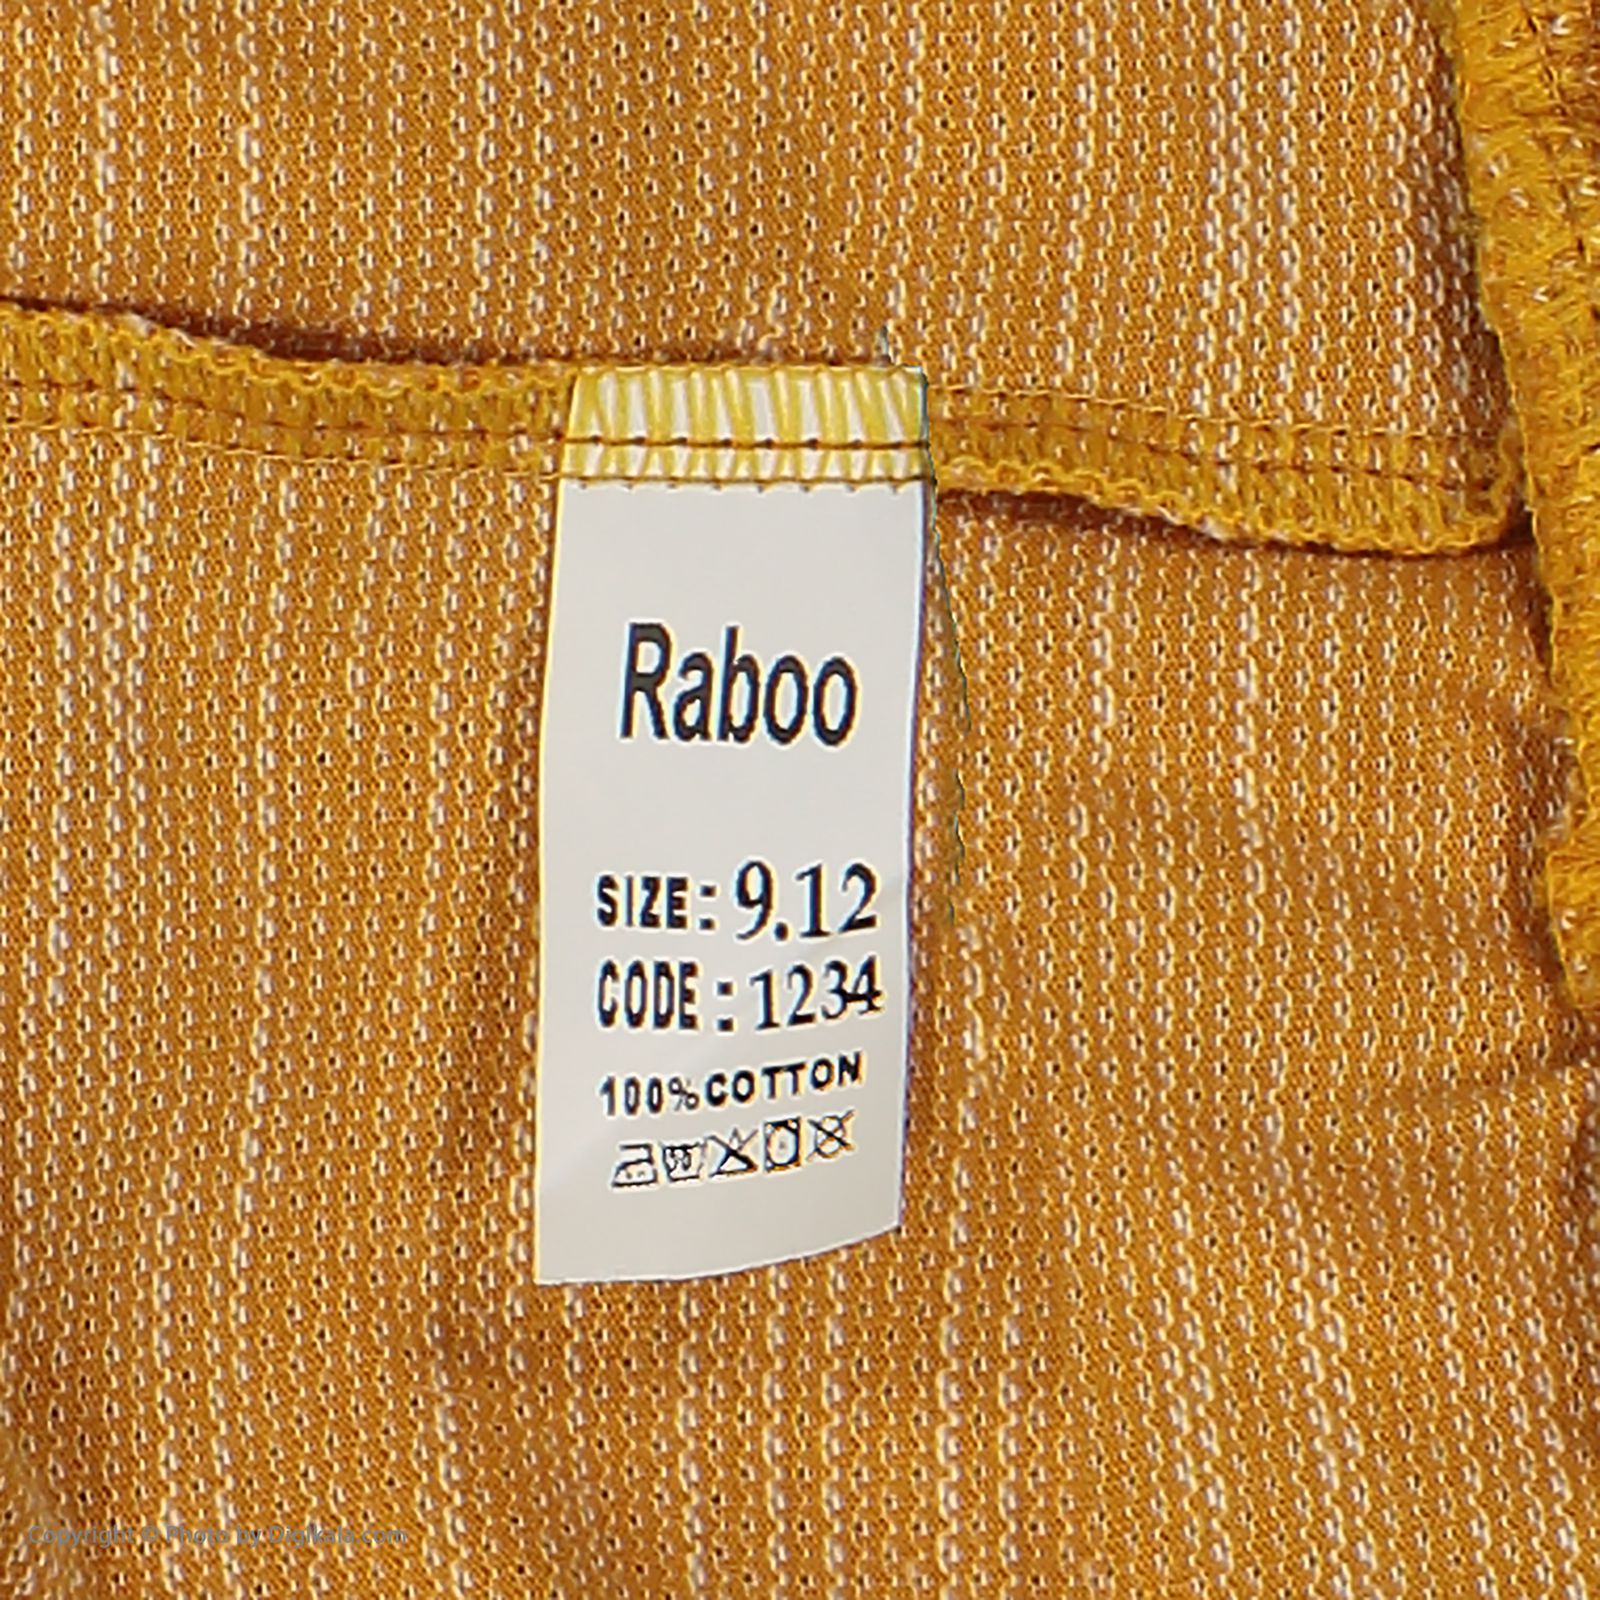 ست تی شرت و شلوار بچگانه رابو مدل 2051120-01 -  - 9